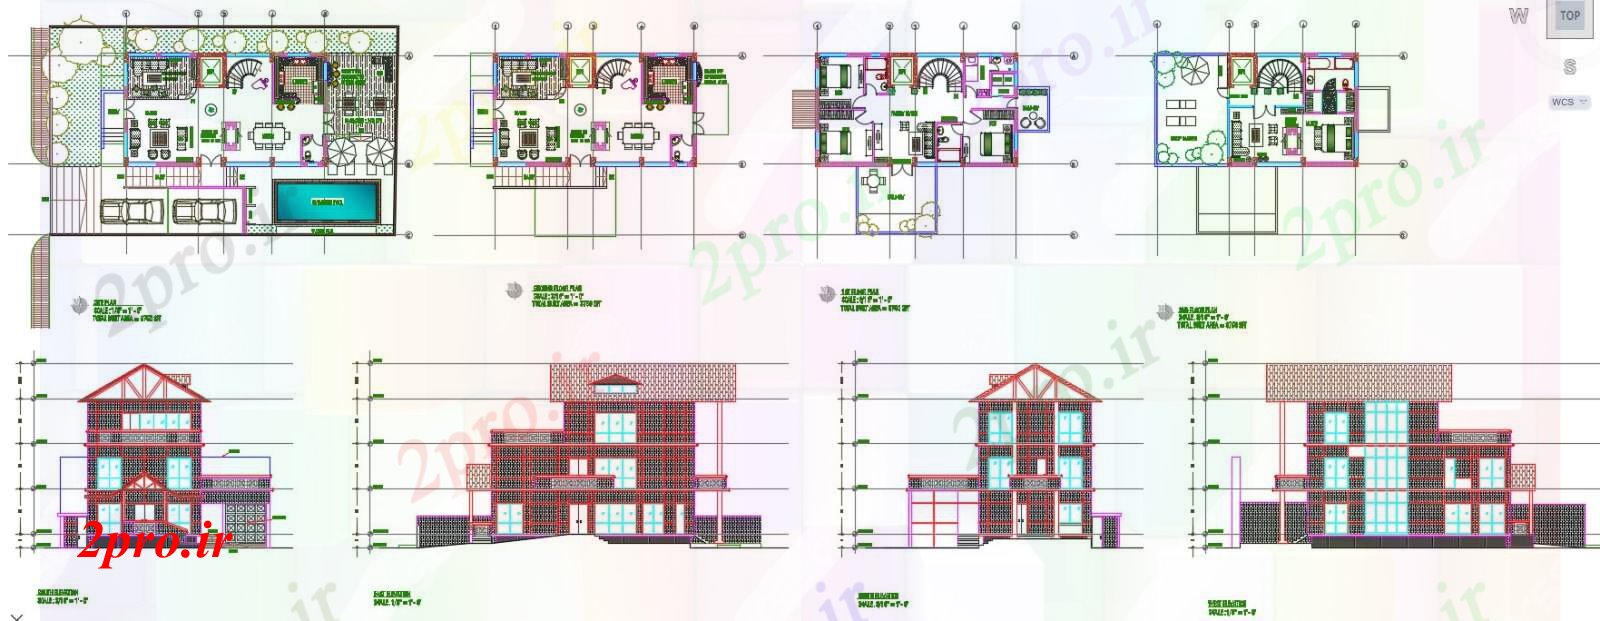 دانلود نقشه خانه های کوچک ، نگهبانی ، سازمانی - ویلا دوبلکس طراحی (کد40639)